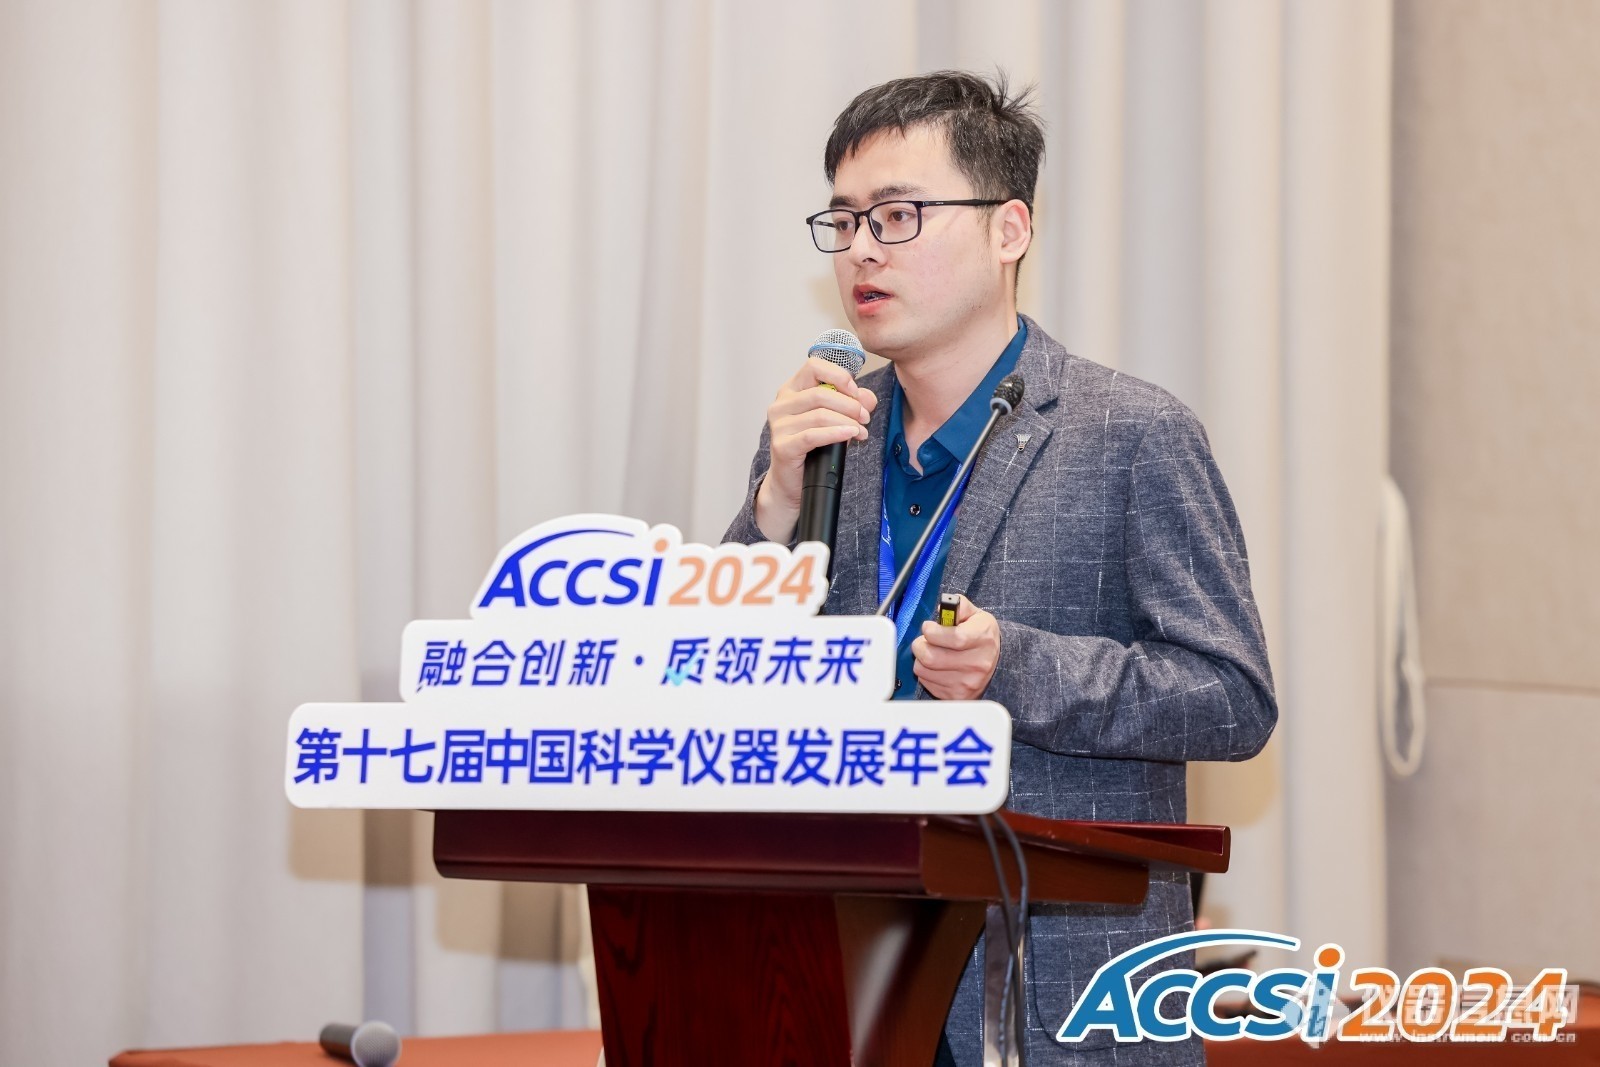 ACCSI2024，上海仪电科学仪器蝉联科学仪器行业多项奖项2.jpeg